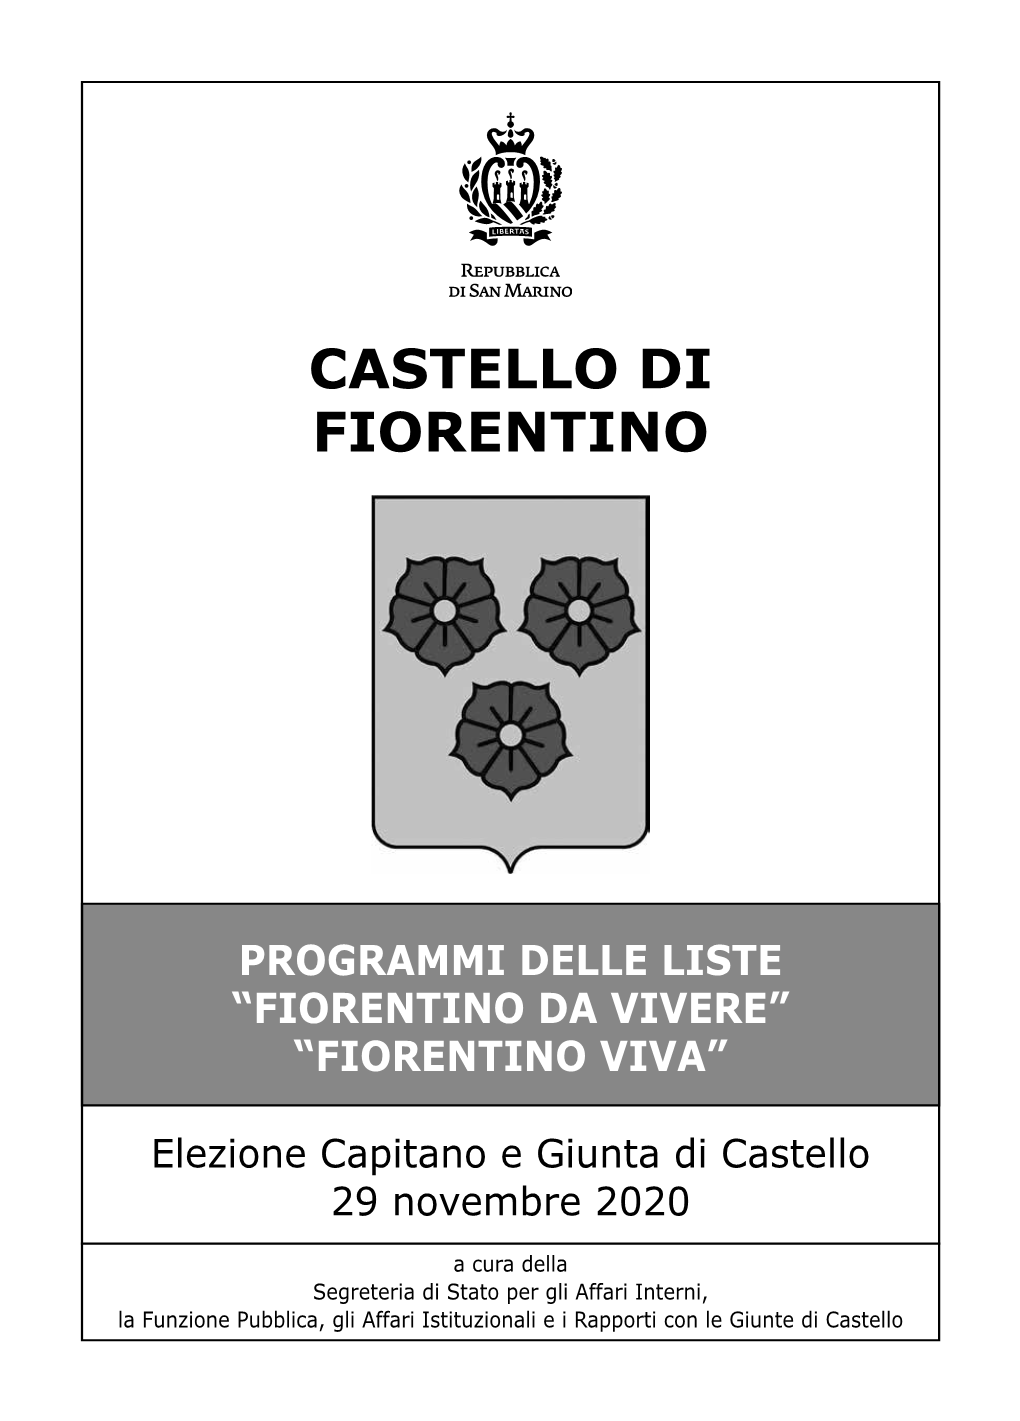 Castello Di Fiorentino